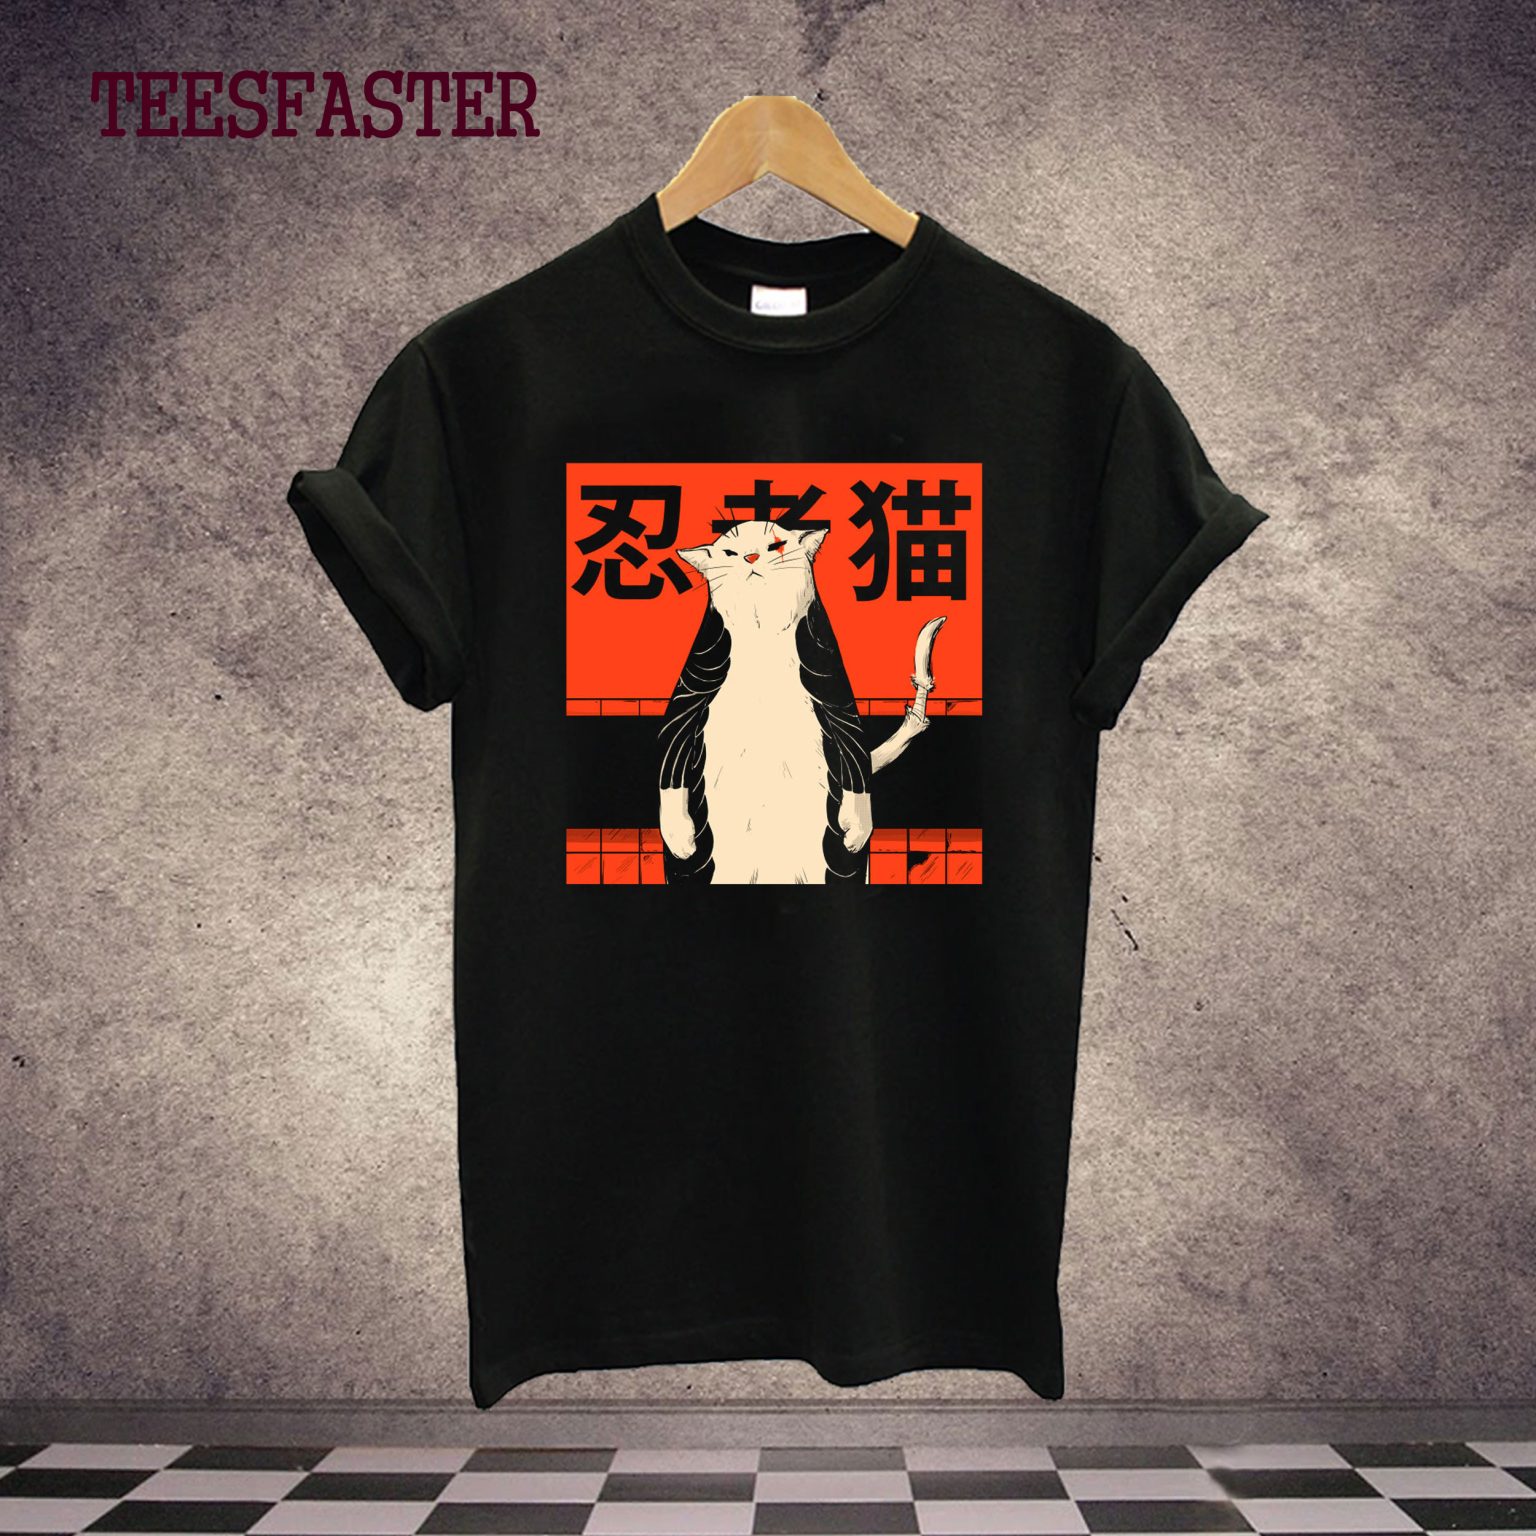 Neko Ninja 2 T-Shirt